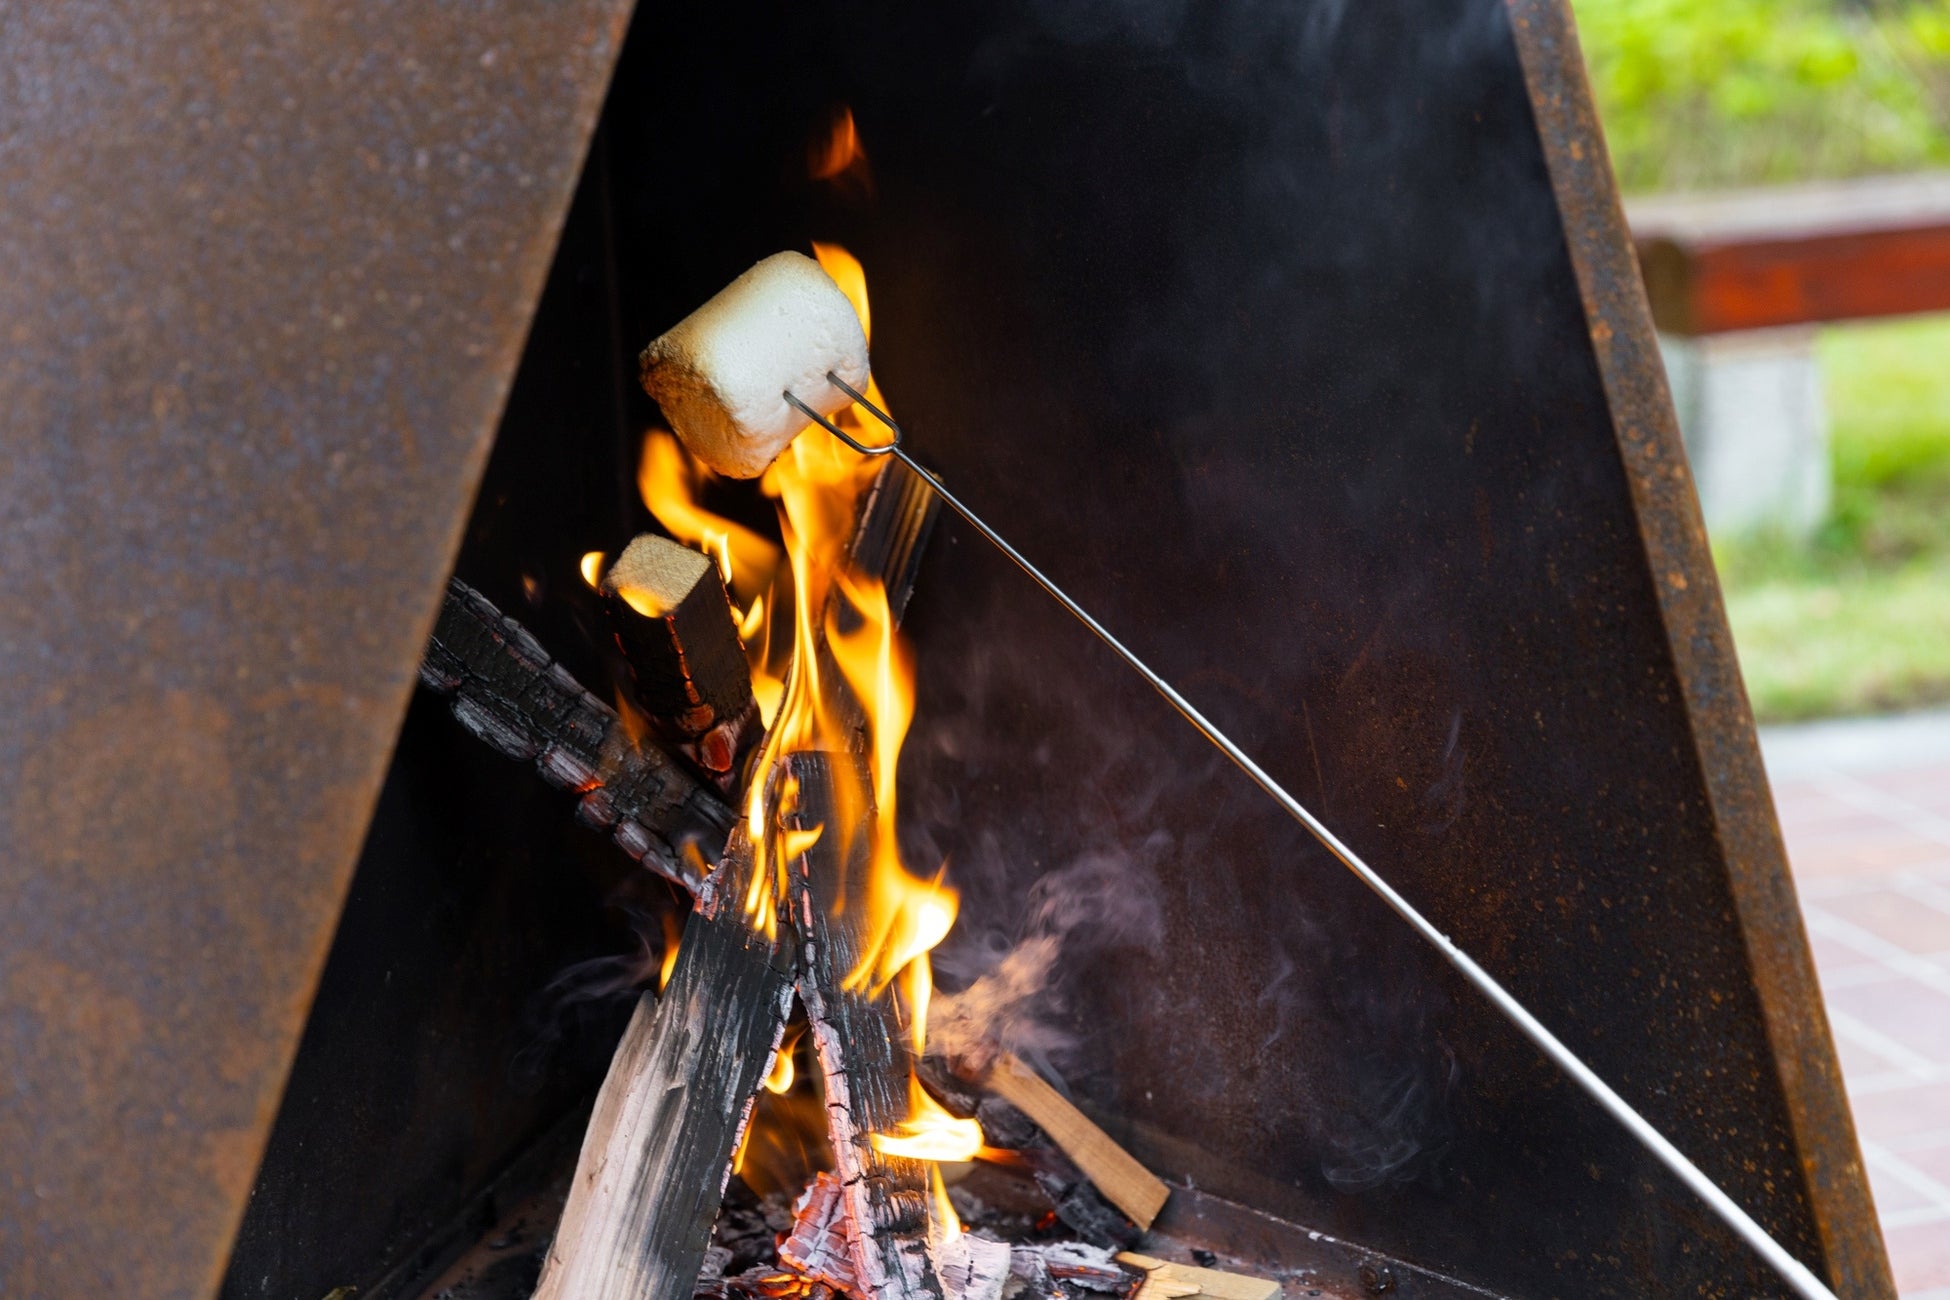 ガーデンストーブを囲んで、焼きマシュマロなどが楽しめる「週末焚火倶楽部」を開催